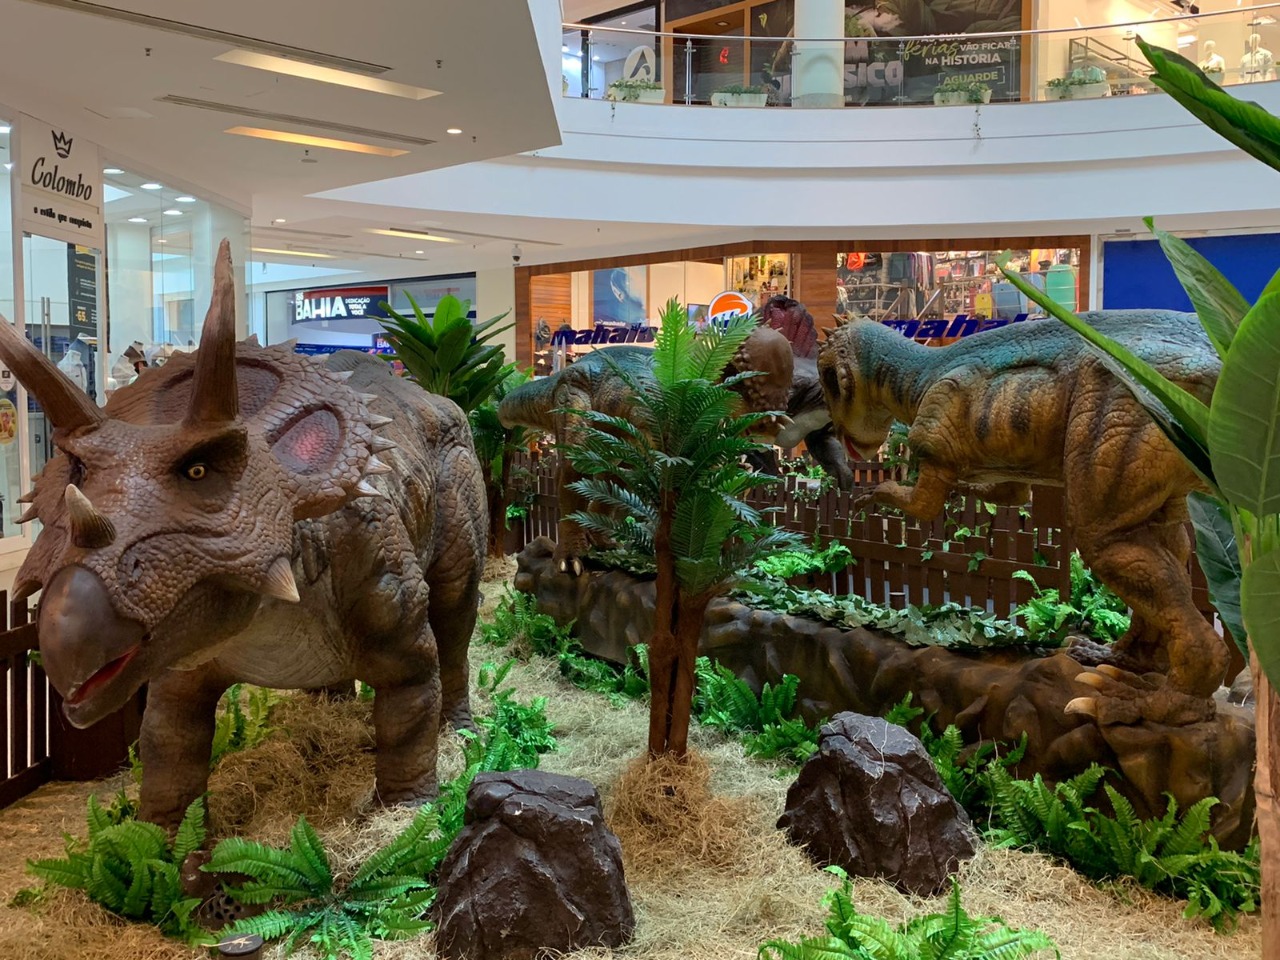 Lugares secretos de prédio tombado e dinossauros gigantes são atrações de  shoppings - 25/06/2018 - sãopaulo - Folha de S.Paulo